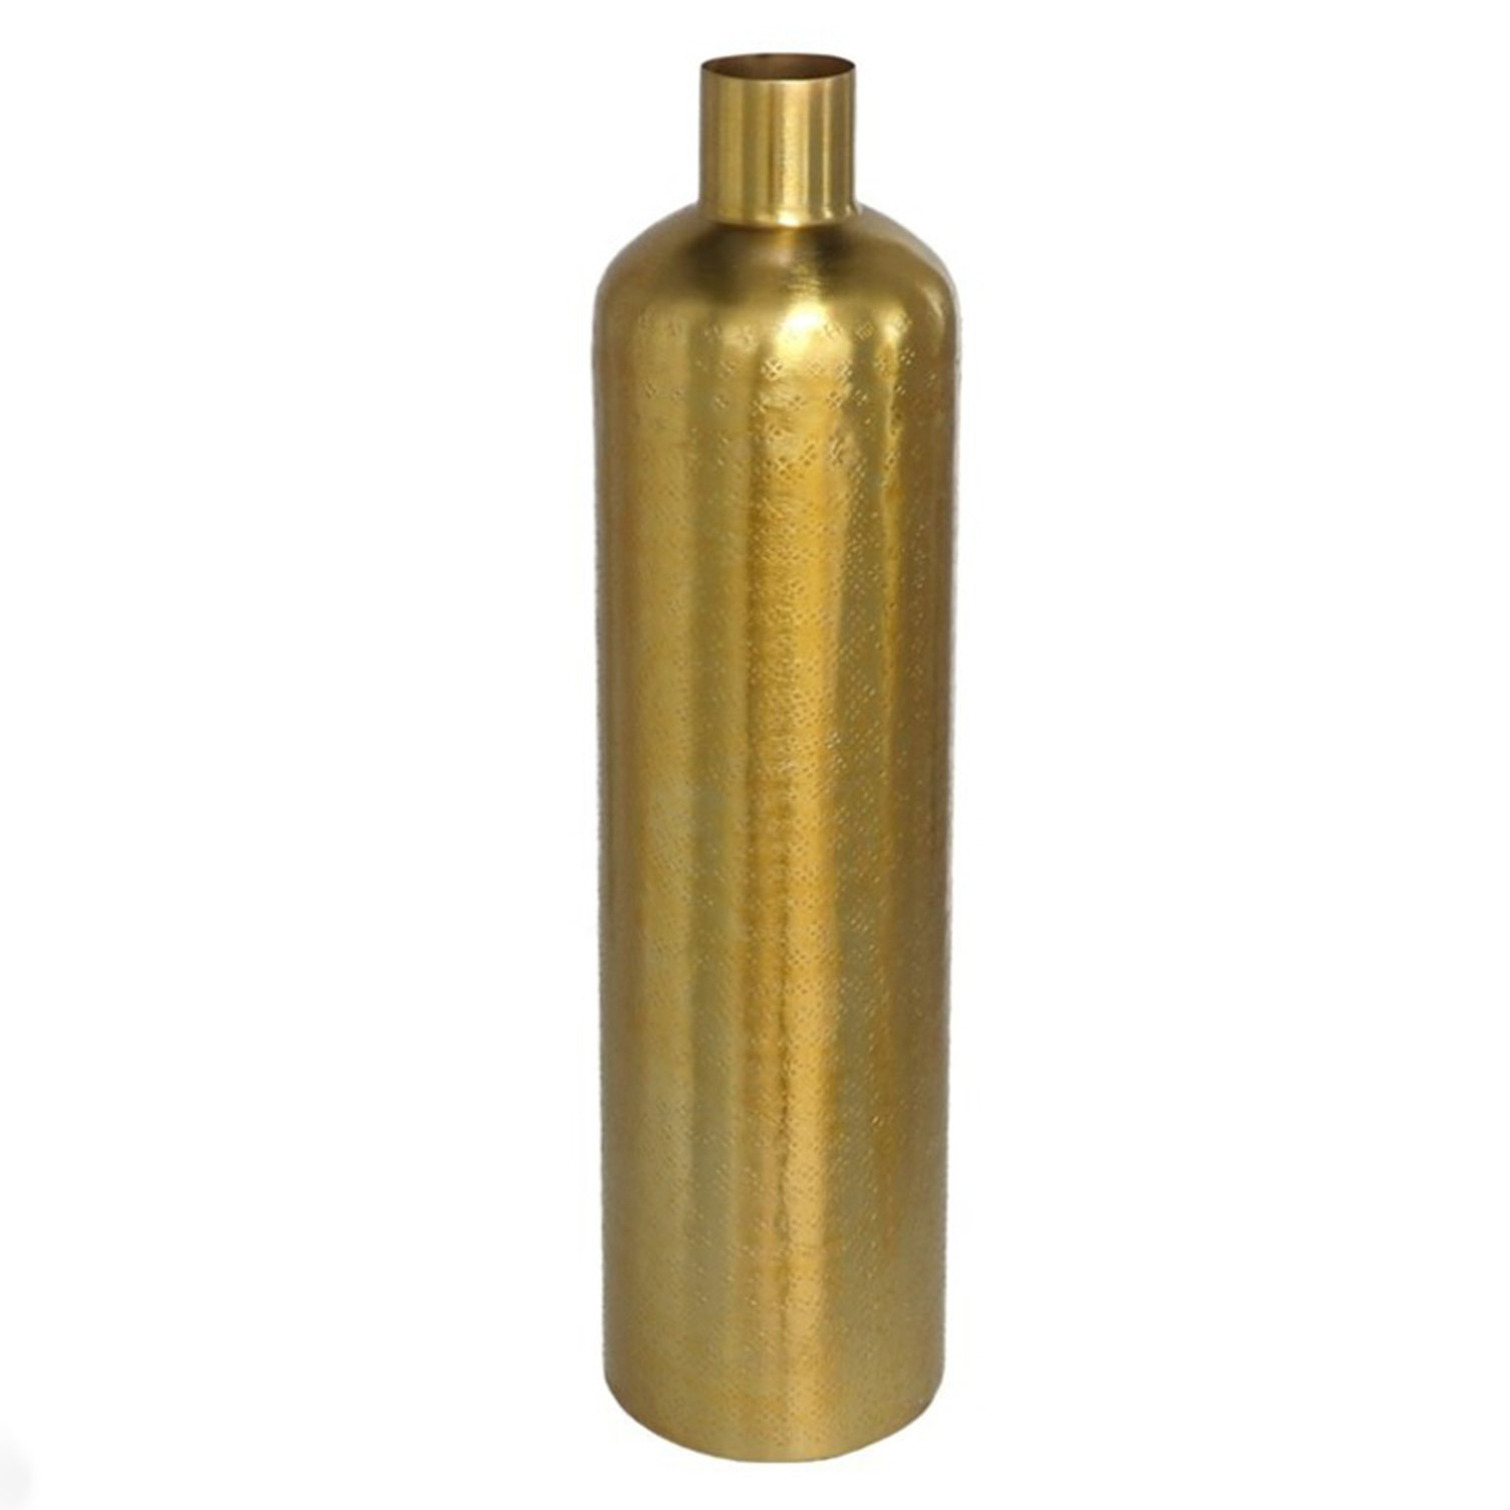 Gerimport Bloemenvaas flesvorm van metaal x 10.5 cm kleur metallic goud -